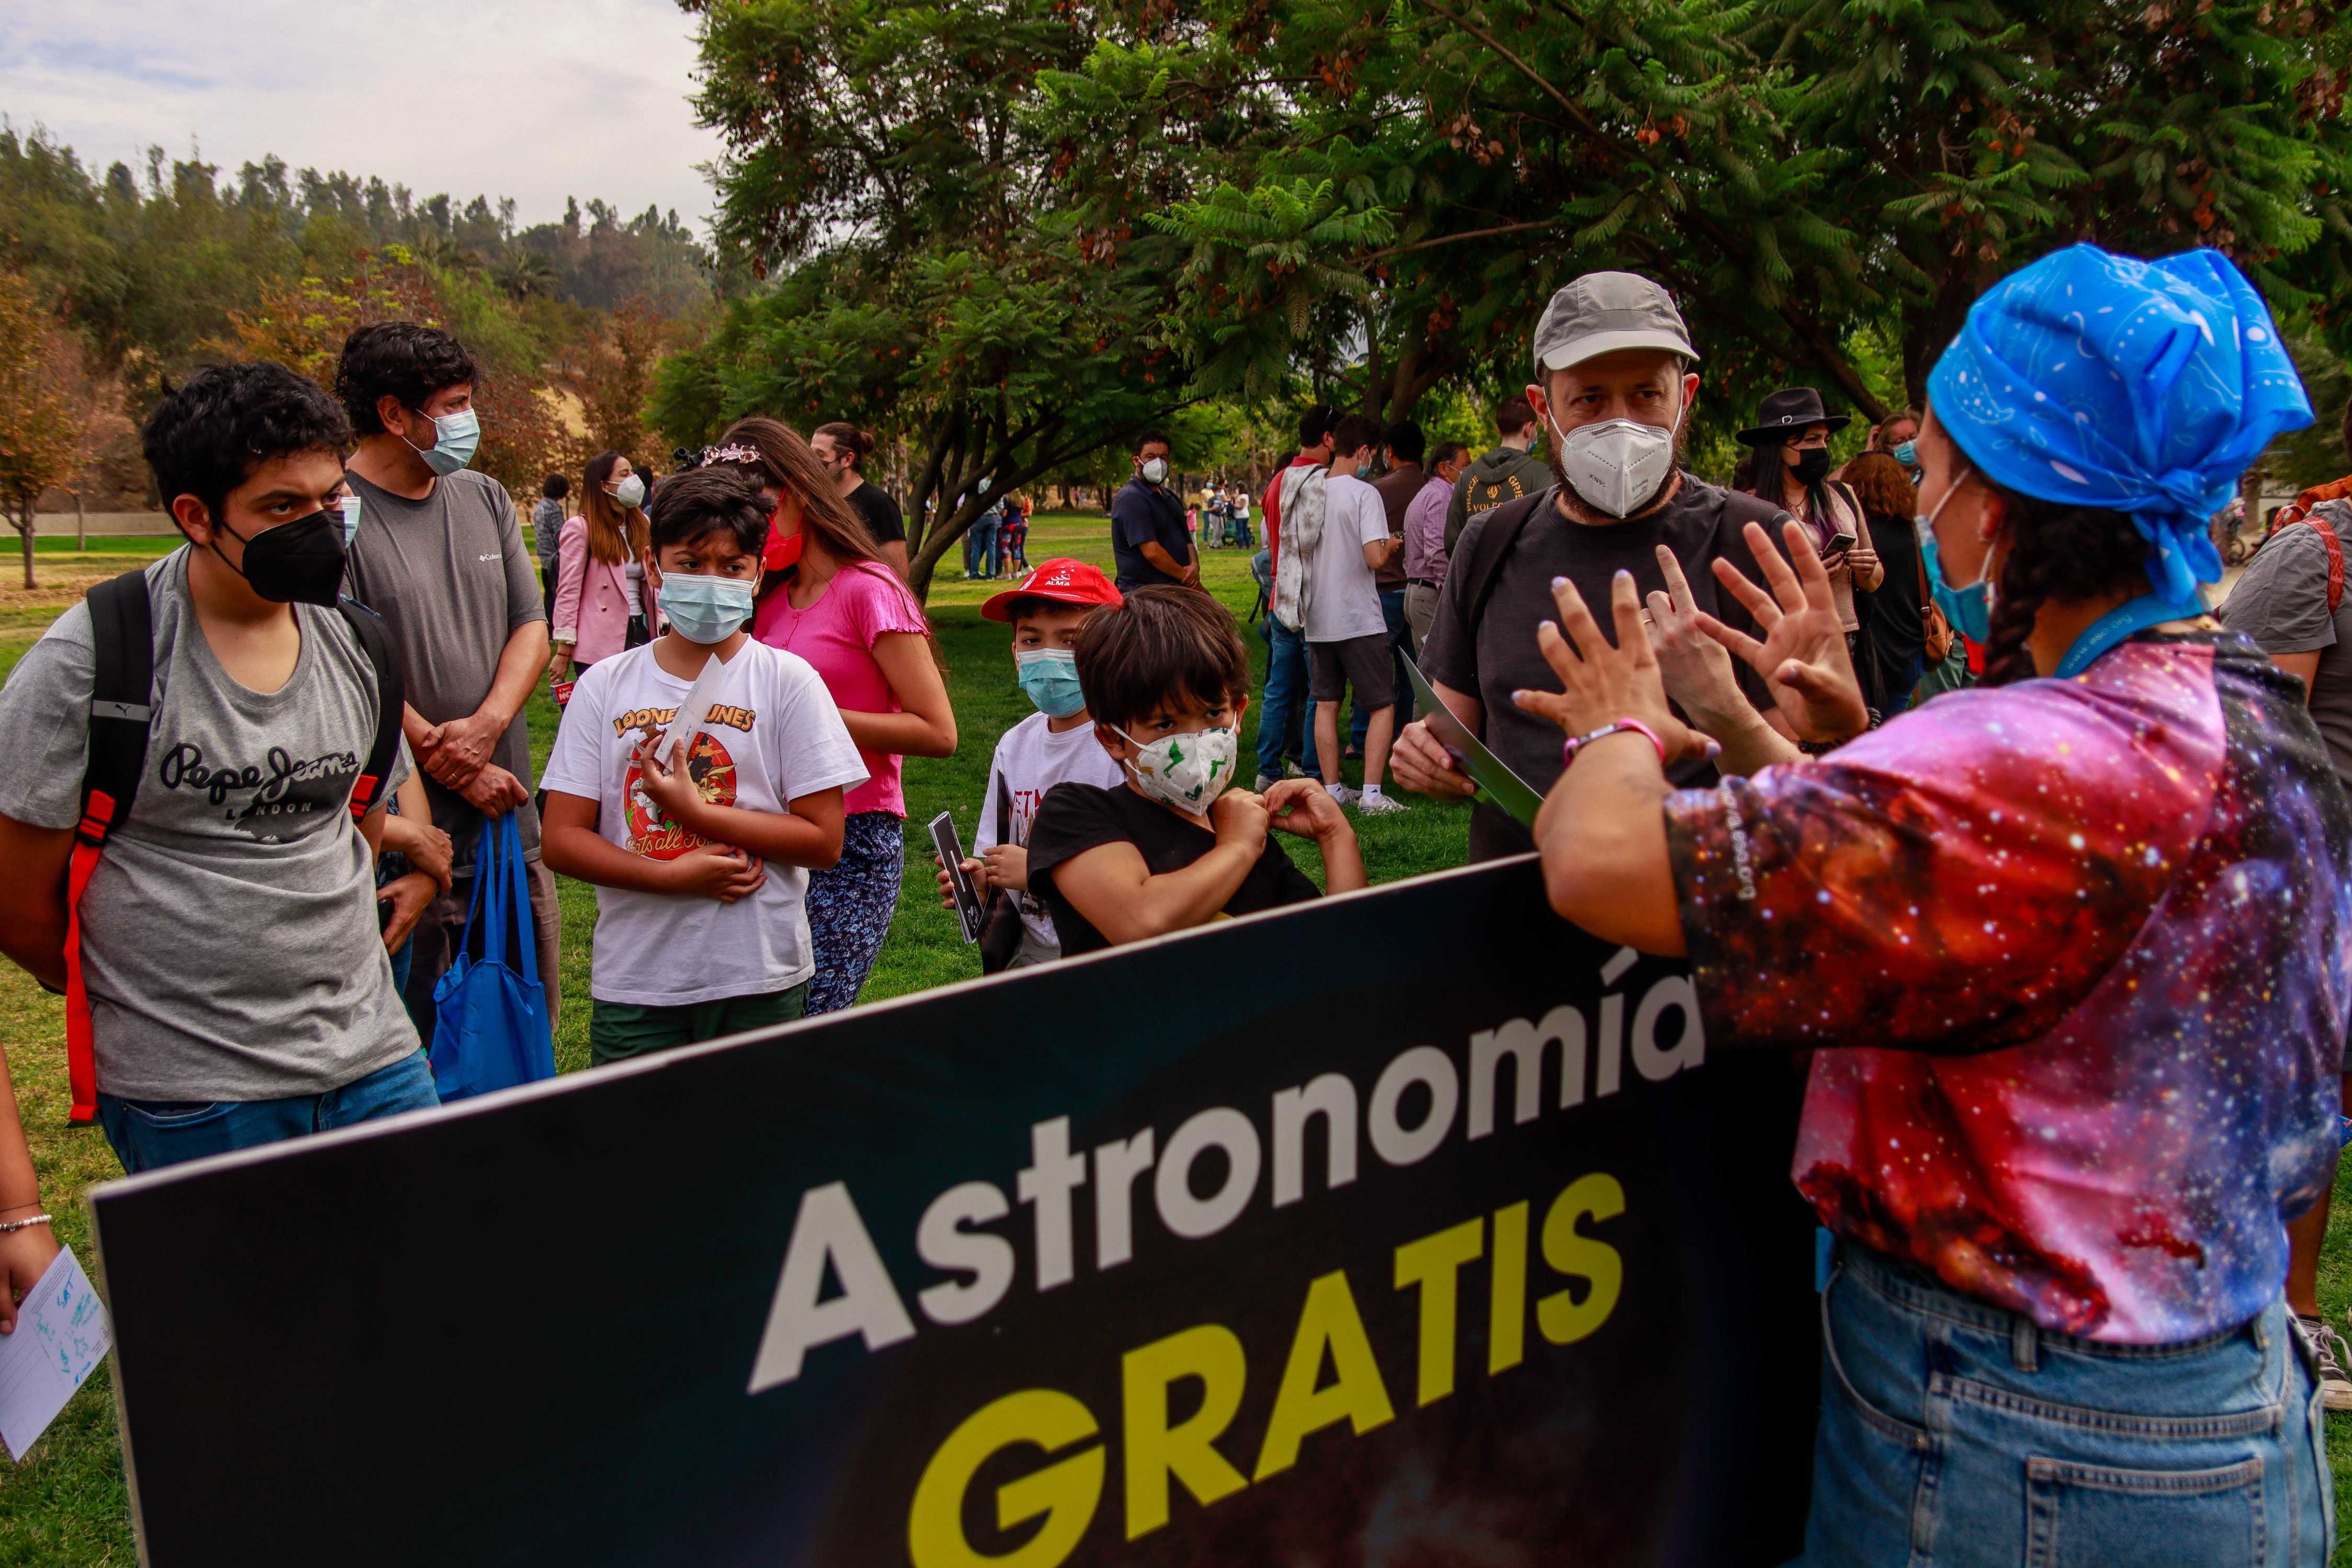 Tras más de dos años sin realizar eventos presenciales debido a la pandemia, el observatorio ALMA junto a sus socios ESO, NRAO y NAOJ salieron al encuentro del público, el pasado sábado 19 de marzo, esta vez en el Parque Bicentenario de Vitacura, para celebrar el Día de la Astronomía en Chile.